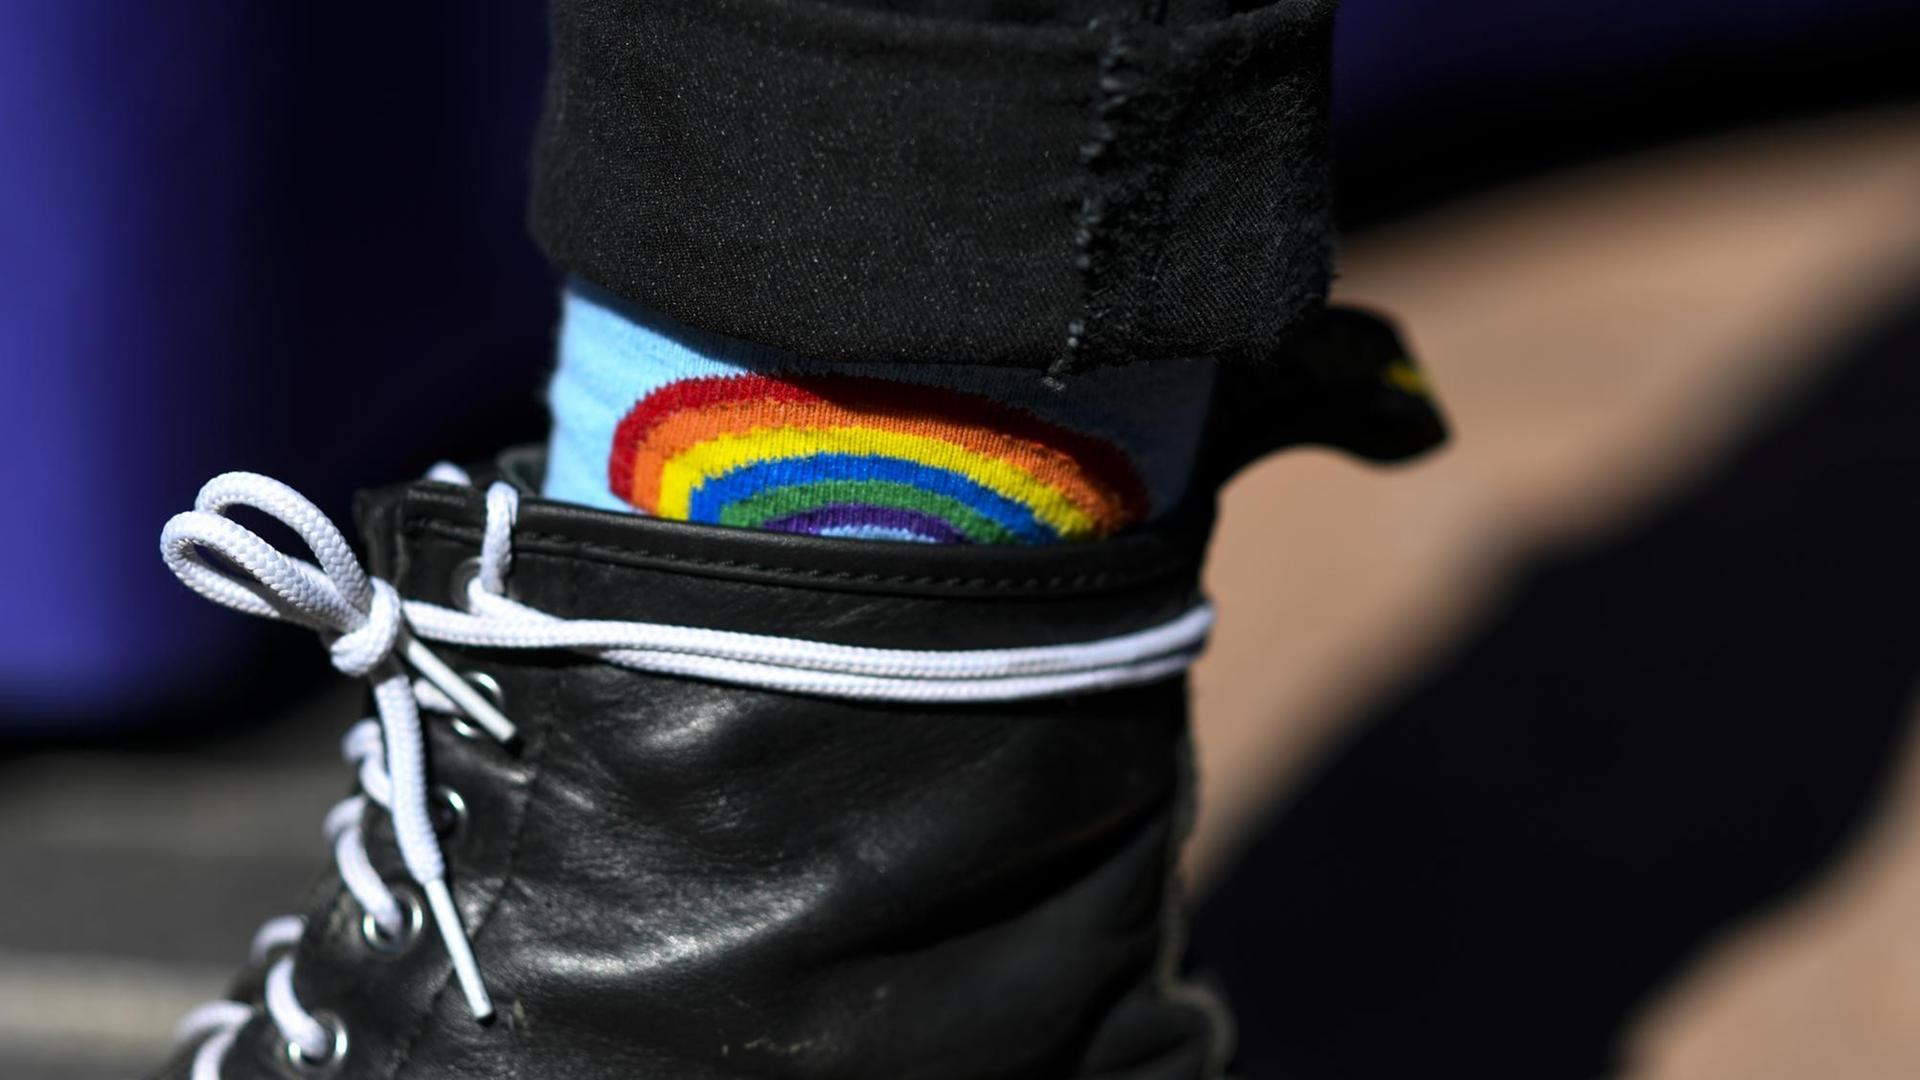 Detailaufnahme einer Regenbogen-Socke, die zwischen schwarzen Stiefeln und Hosen herausschaut.